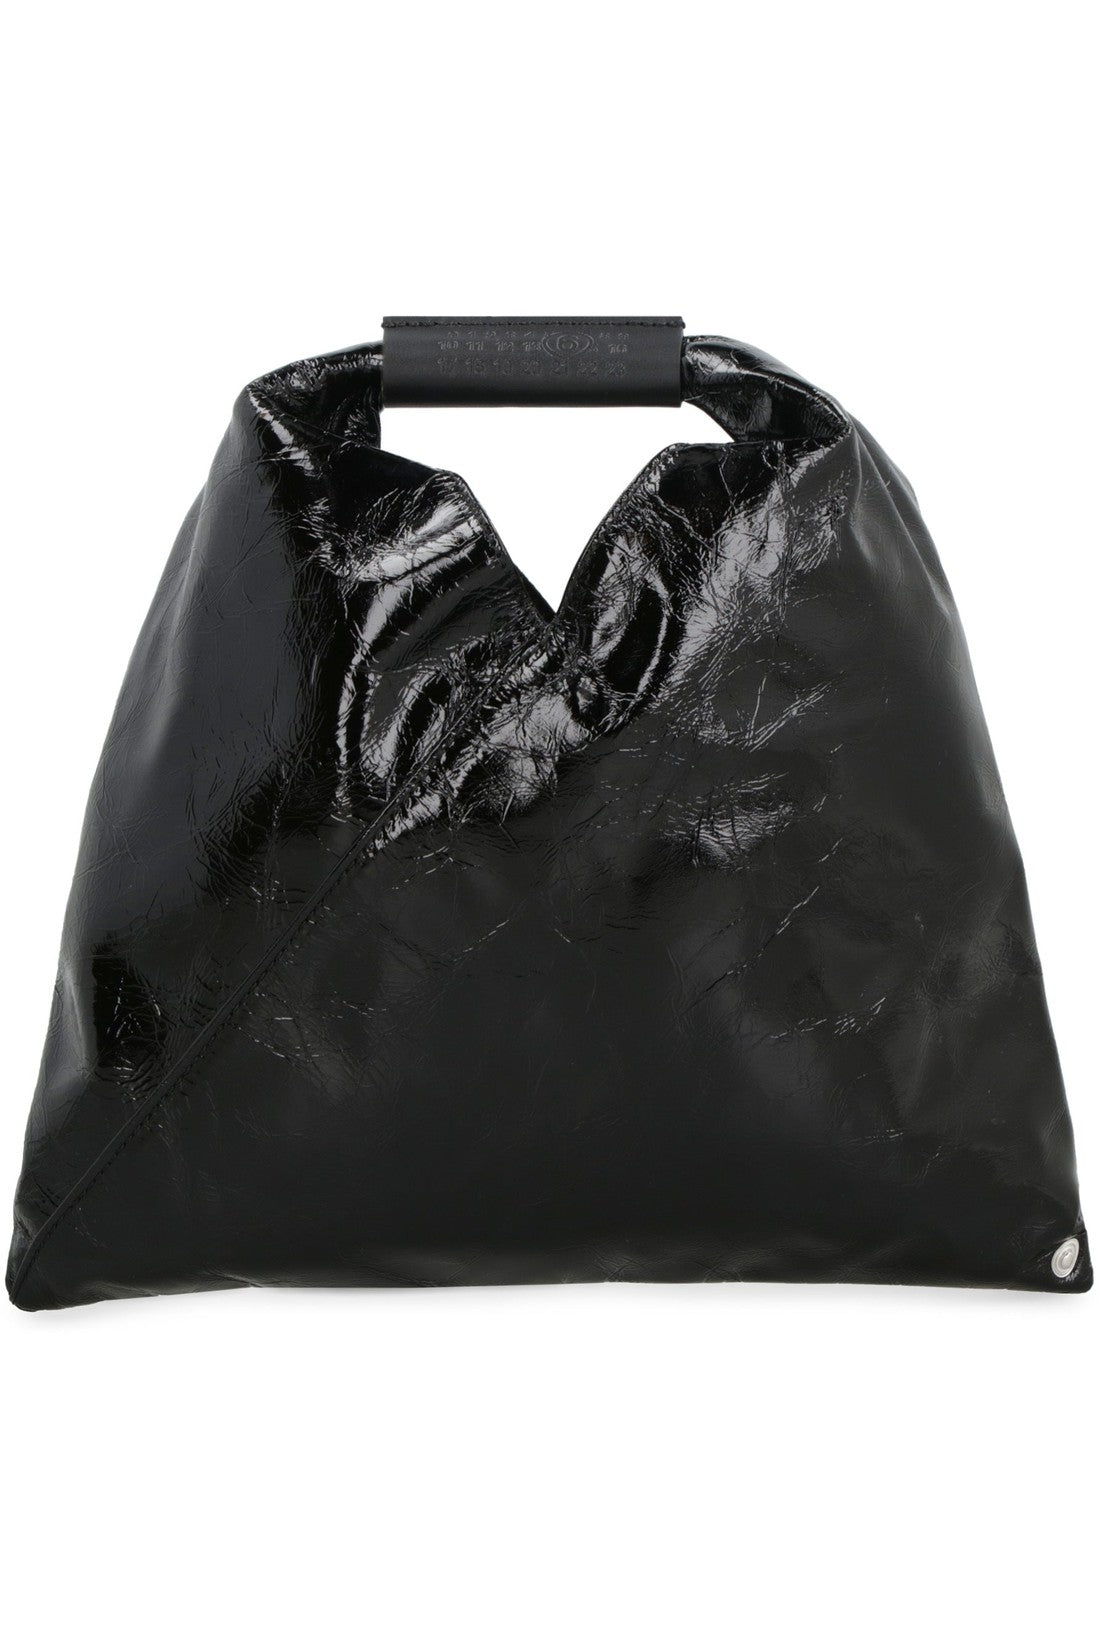 MM6 Maison Margiela-OUTLET-SALE-Japanese Classic leather mini handbag-ARCHIVIST